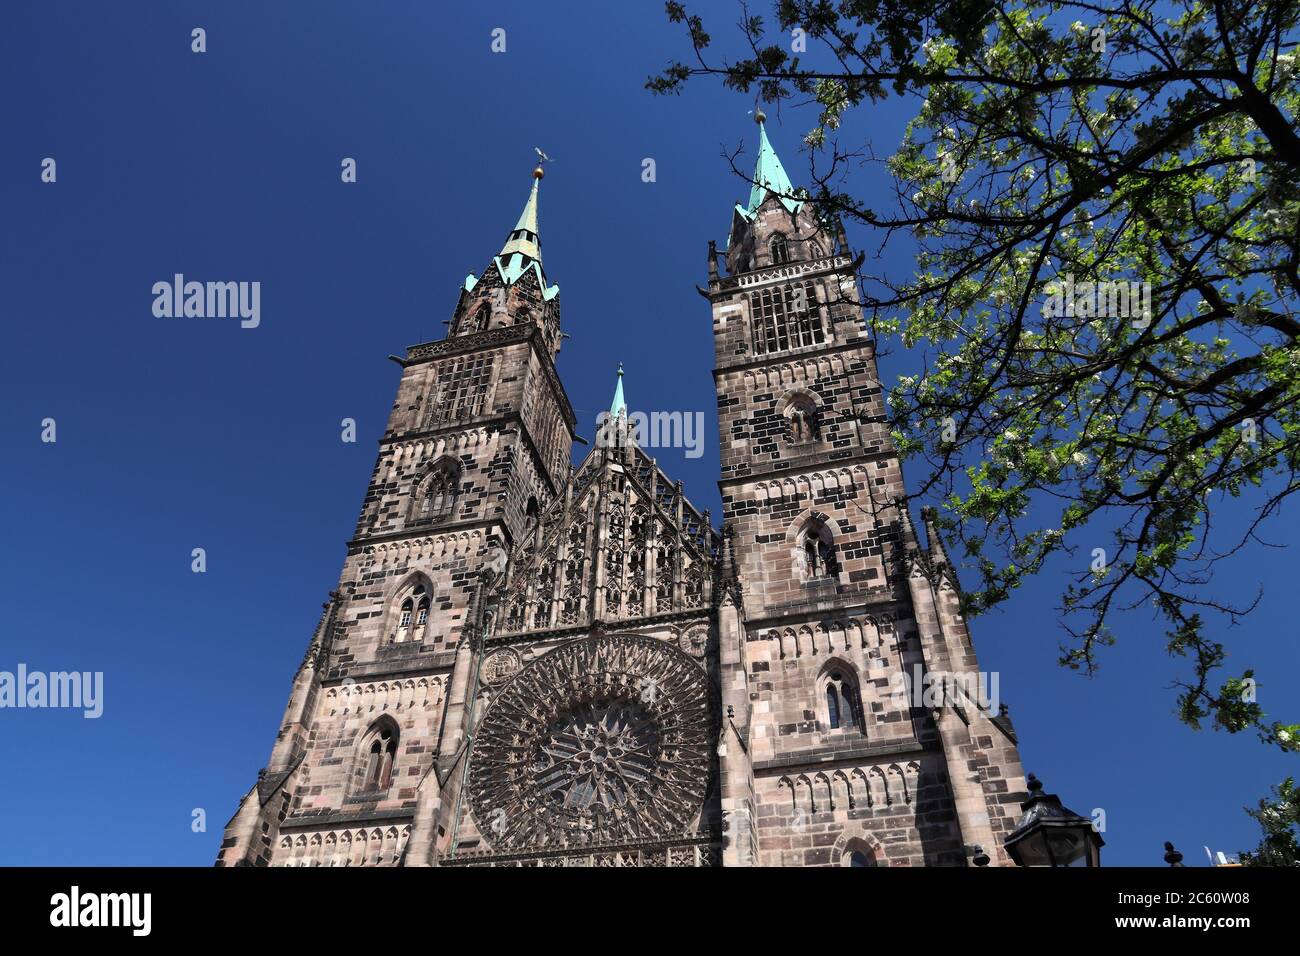 Germany landmarks. St Lorenz church - gothic landmark of Nuremberg, Germany. Stock Photo